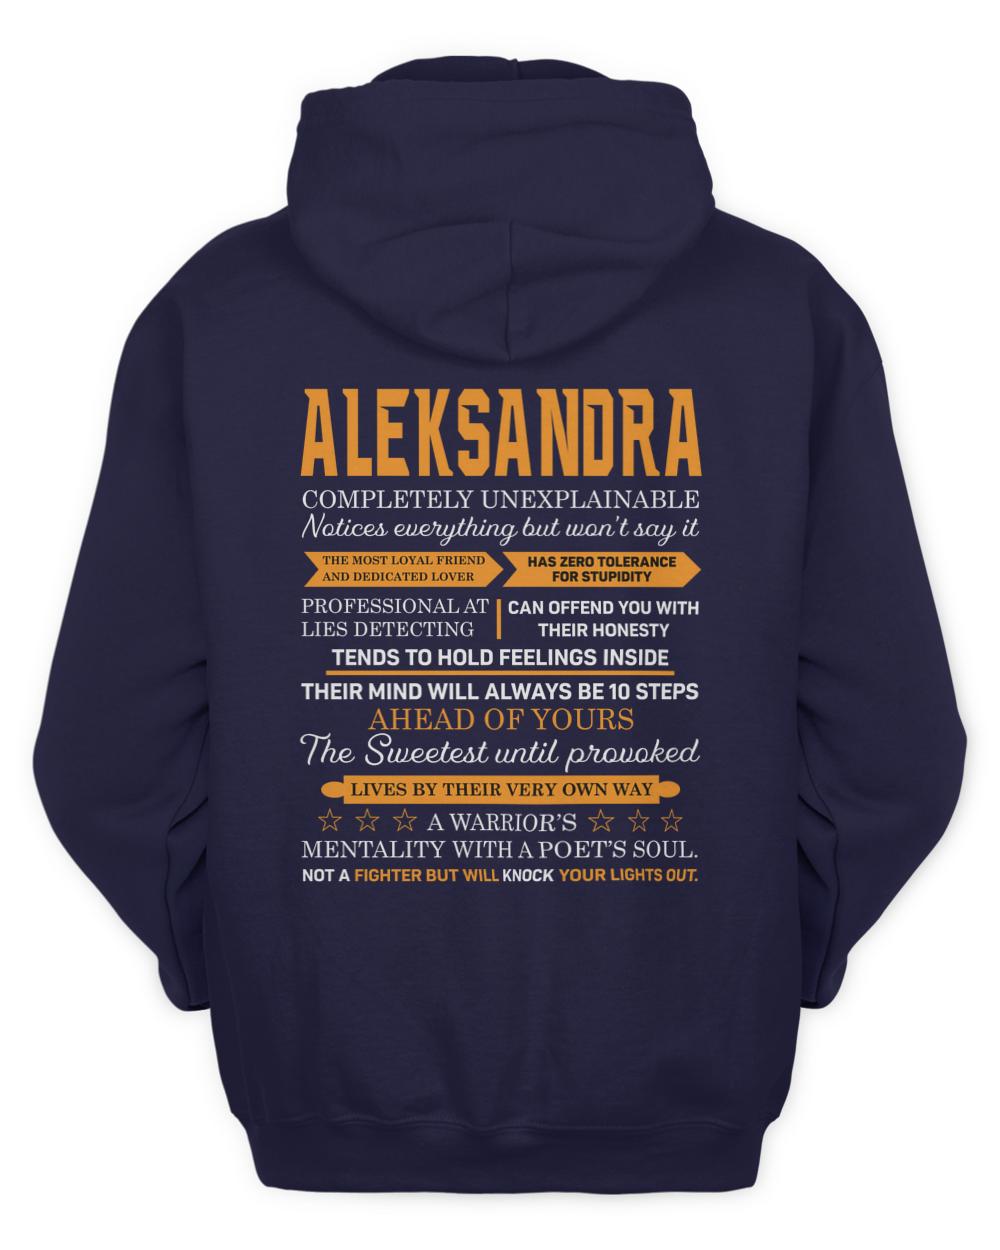 ALEKSANDRA-13K-N1-01